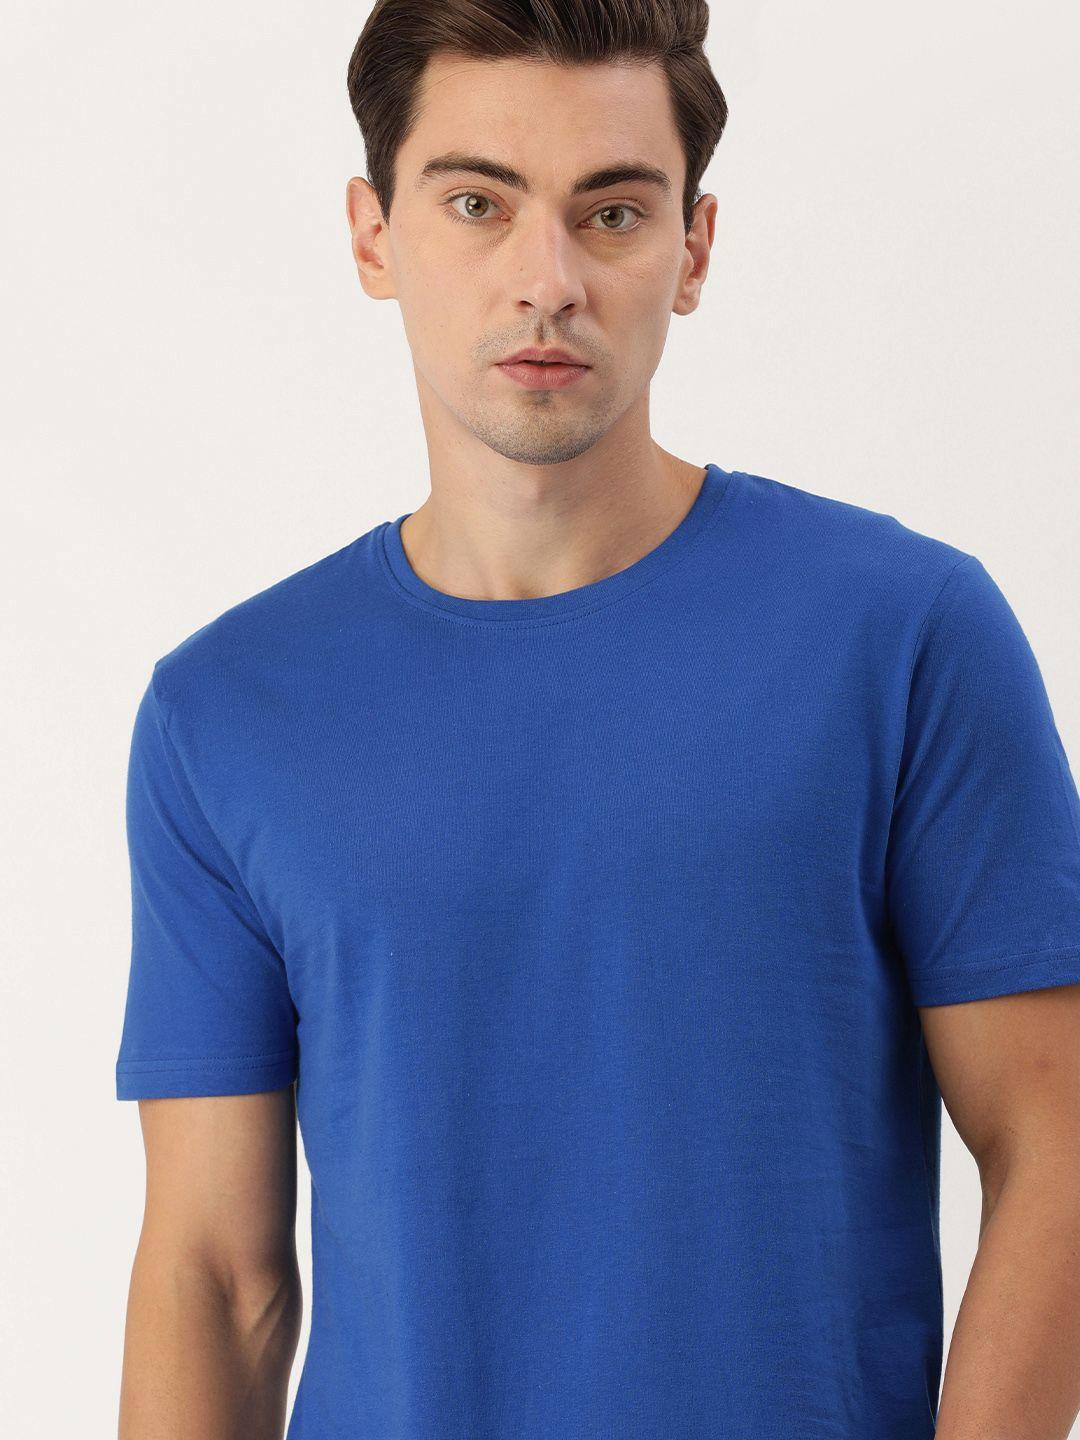 ivoc men blue round neck cotton t-shirt